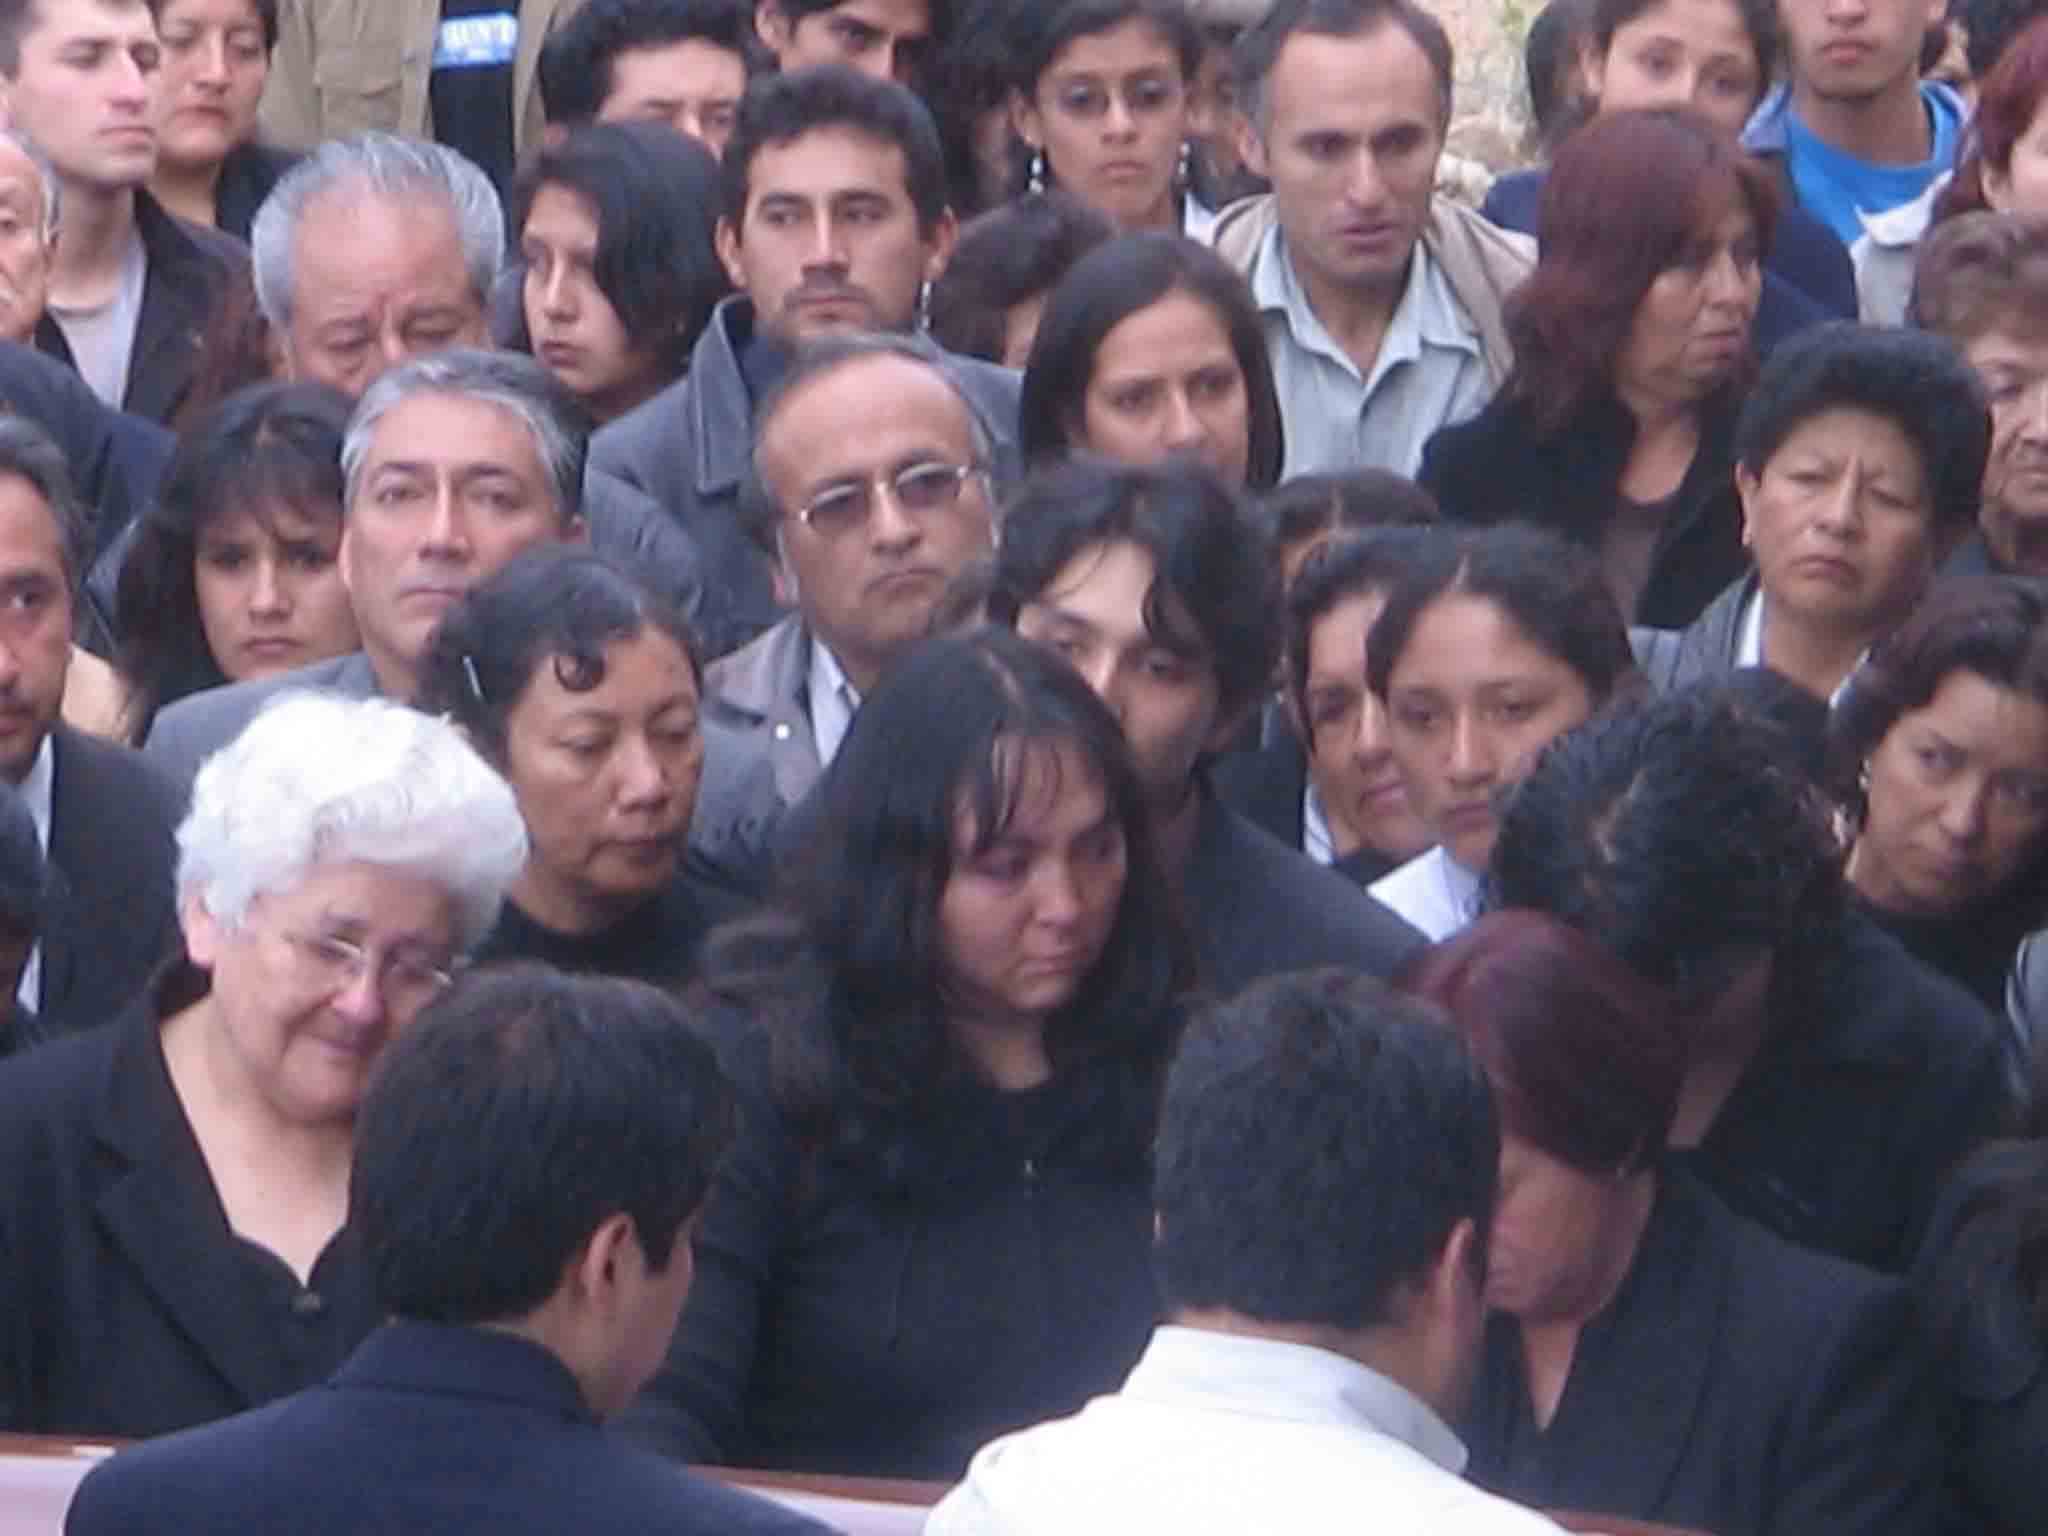 La Sra. Aurea, rodeada de familiares y amistades en el Campo Santo le expresan su último adios a su hermano Álvaro. Cajamarca, Agosto 2006.